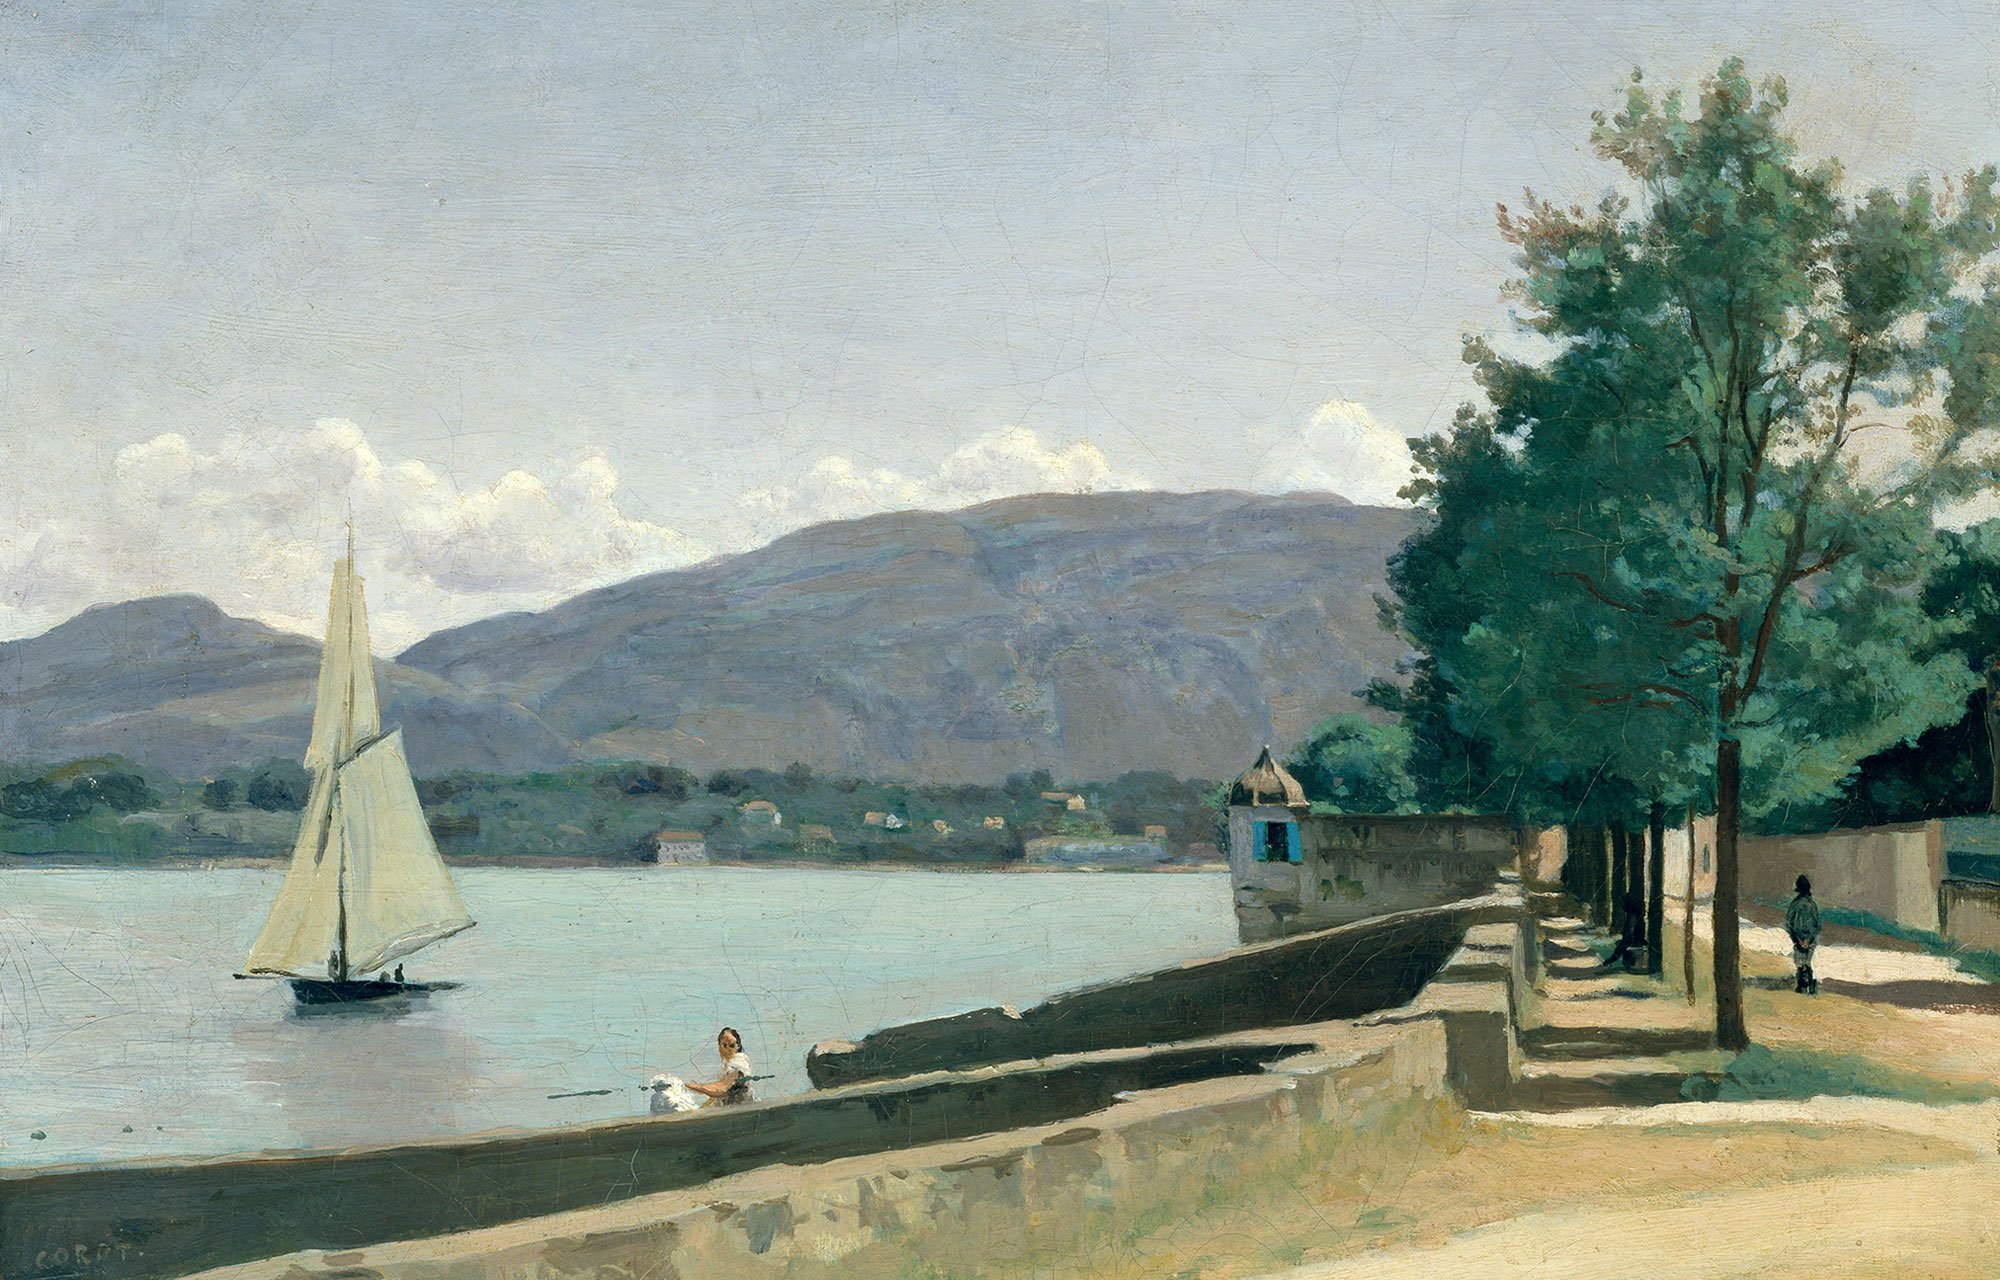 Urbane Uferszene an einem See. Rechts sieht man einen Allee und links den See mit einem Segelboot. Das Bild ist von Camille Corot.